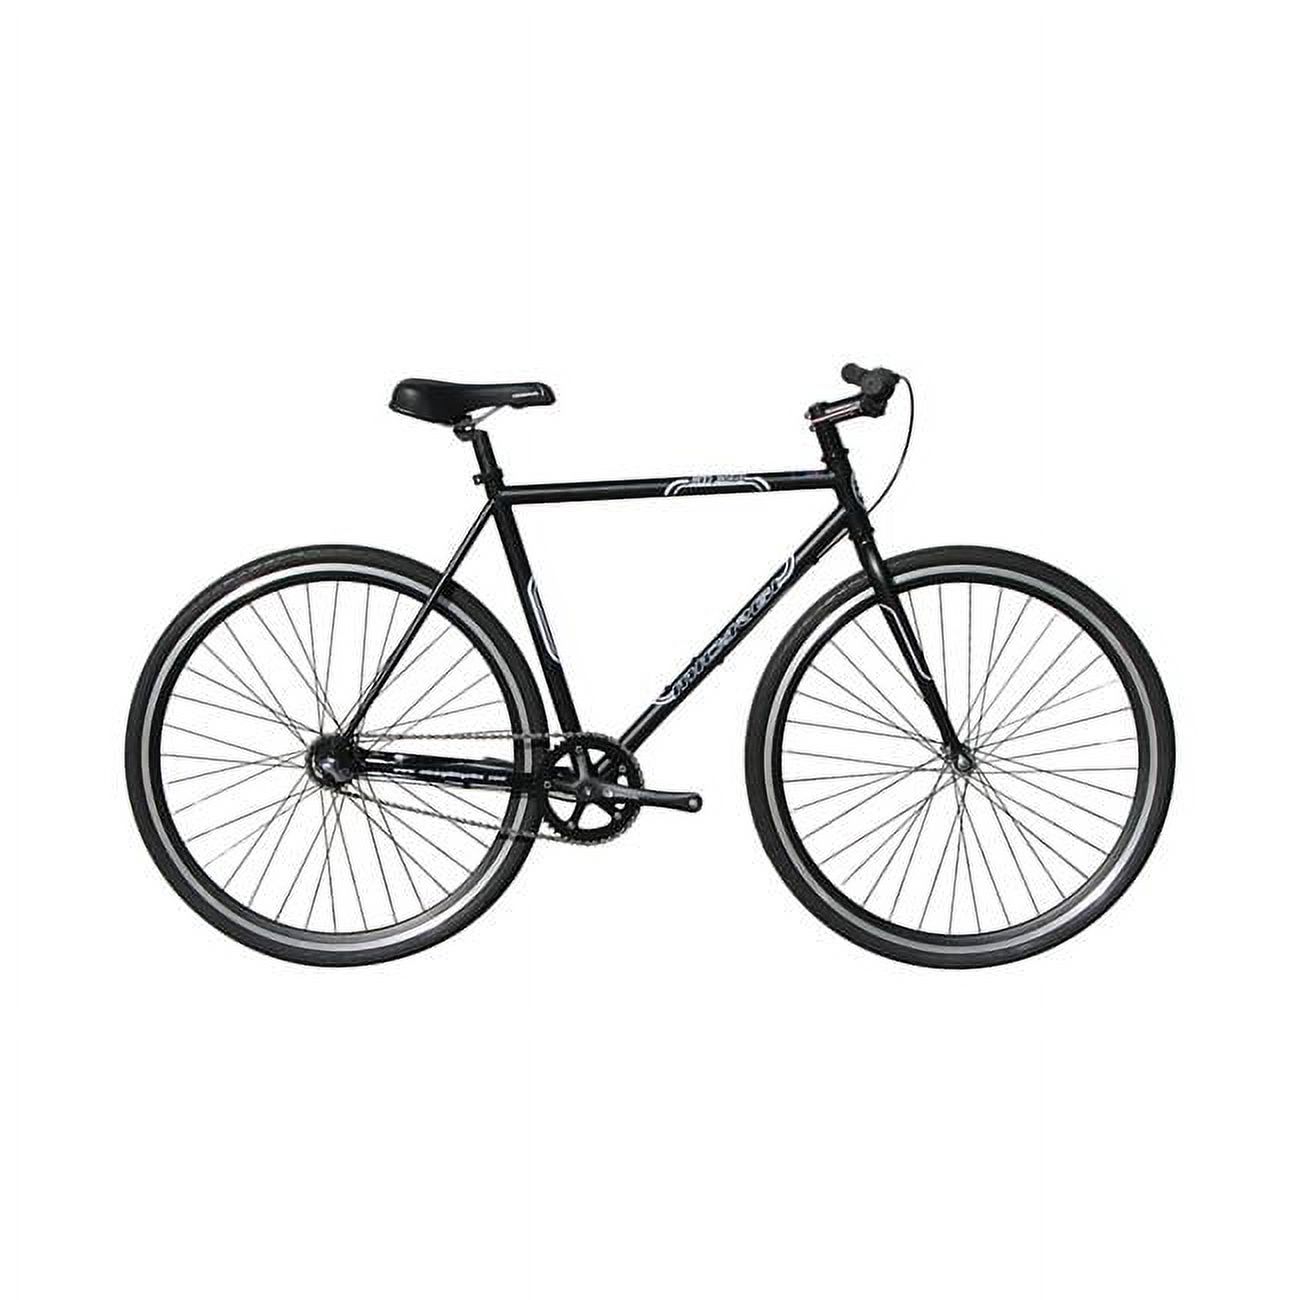 Micargi  53 cm Hi-Ten Steel & Aluminum Frame Fixed Gear Road Bicycle, Matte Black & Black - image 1 of 2